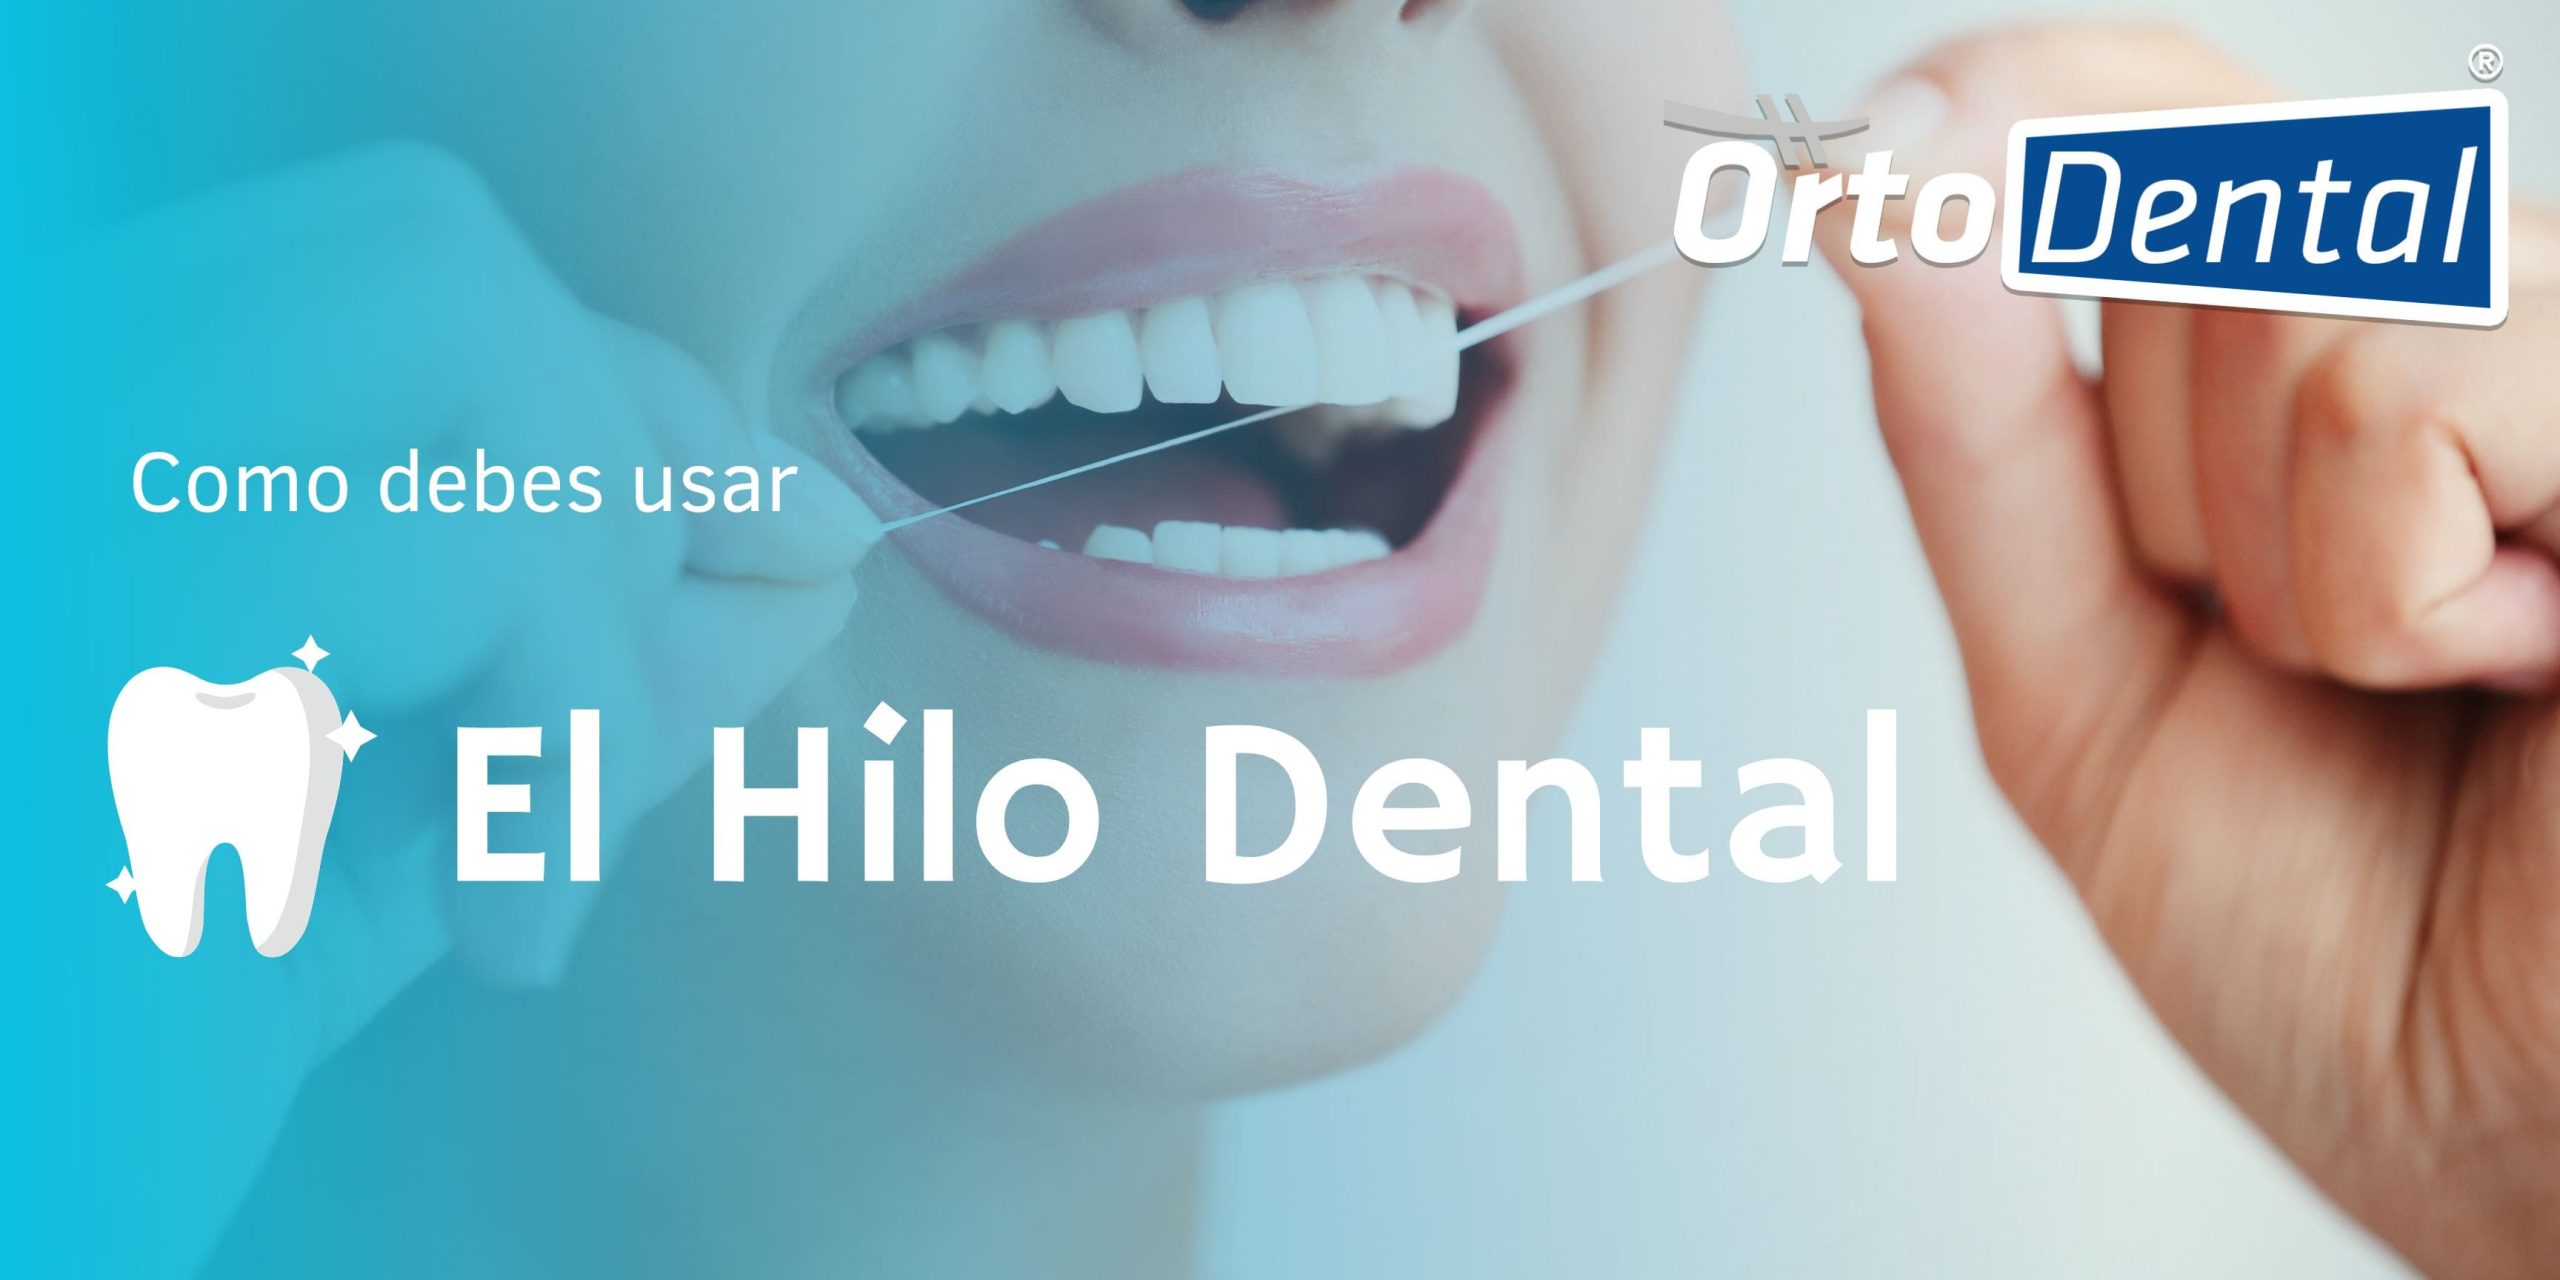 El Hilo Dental y la Importancia de la Higiene Oral Preventiva